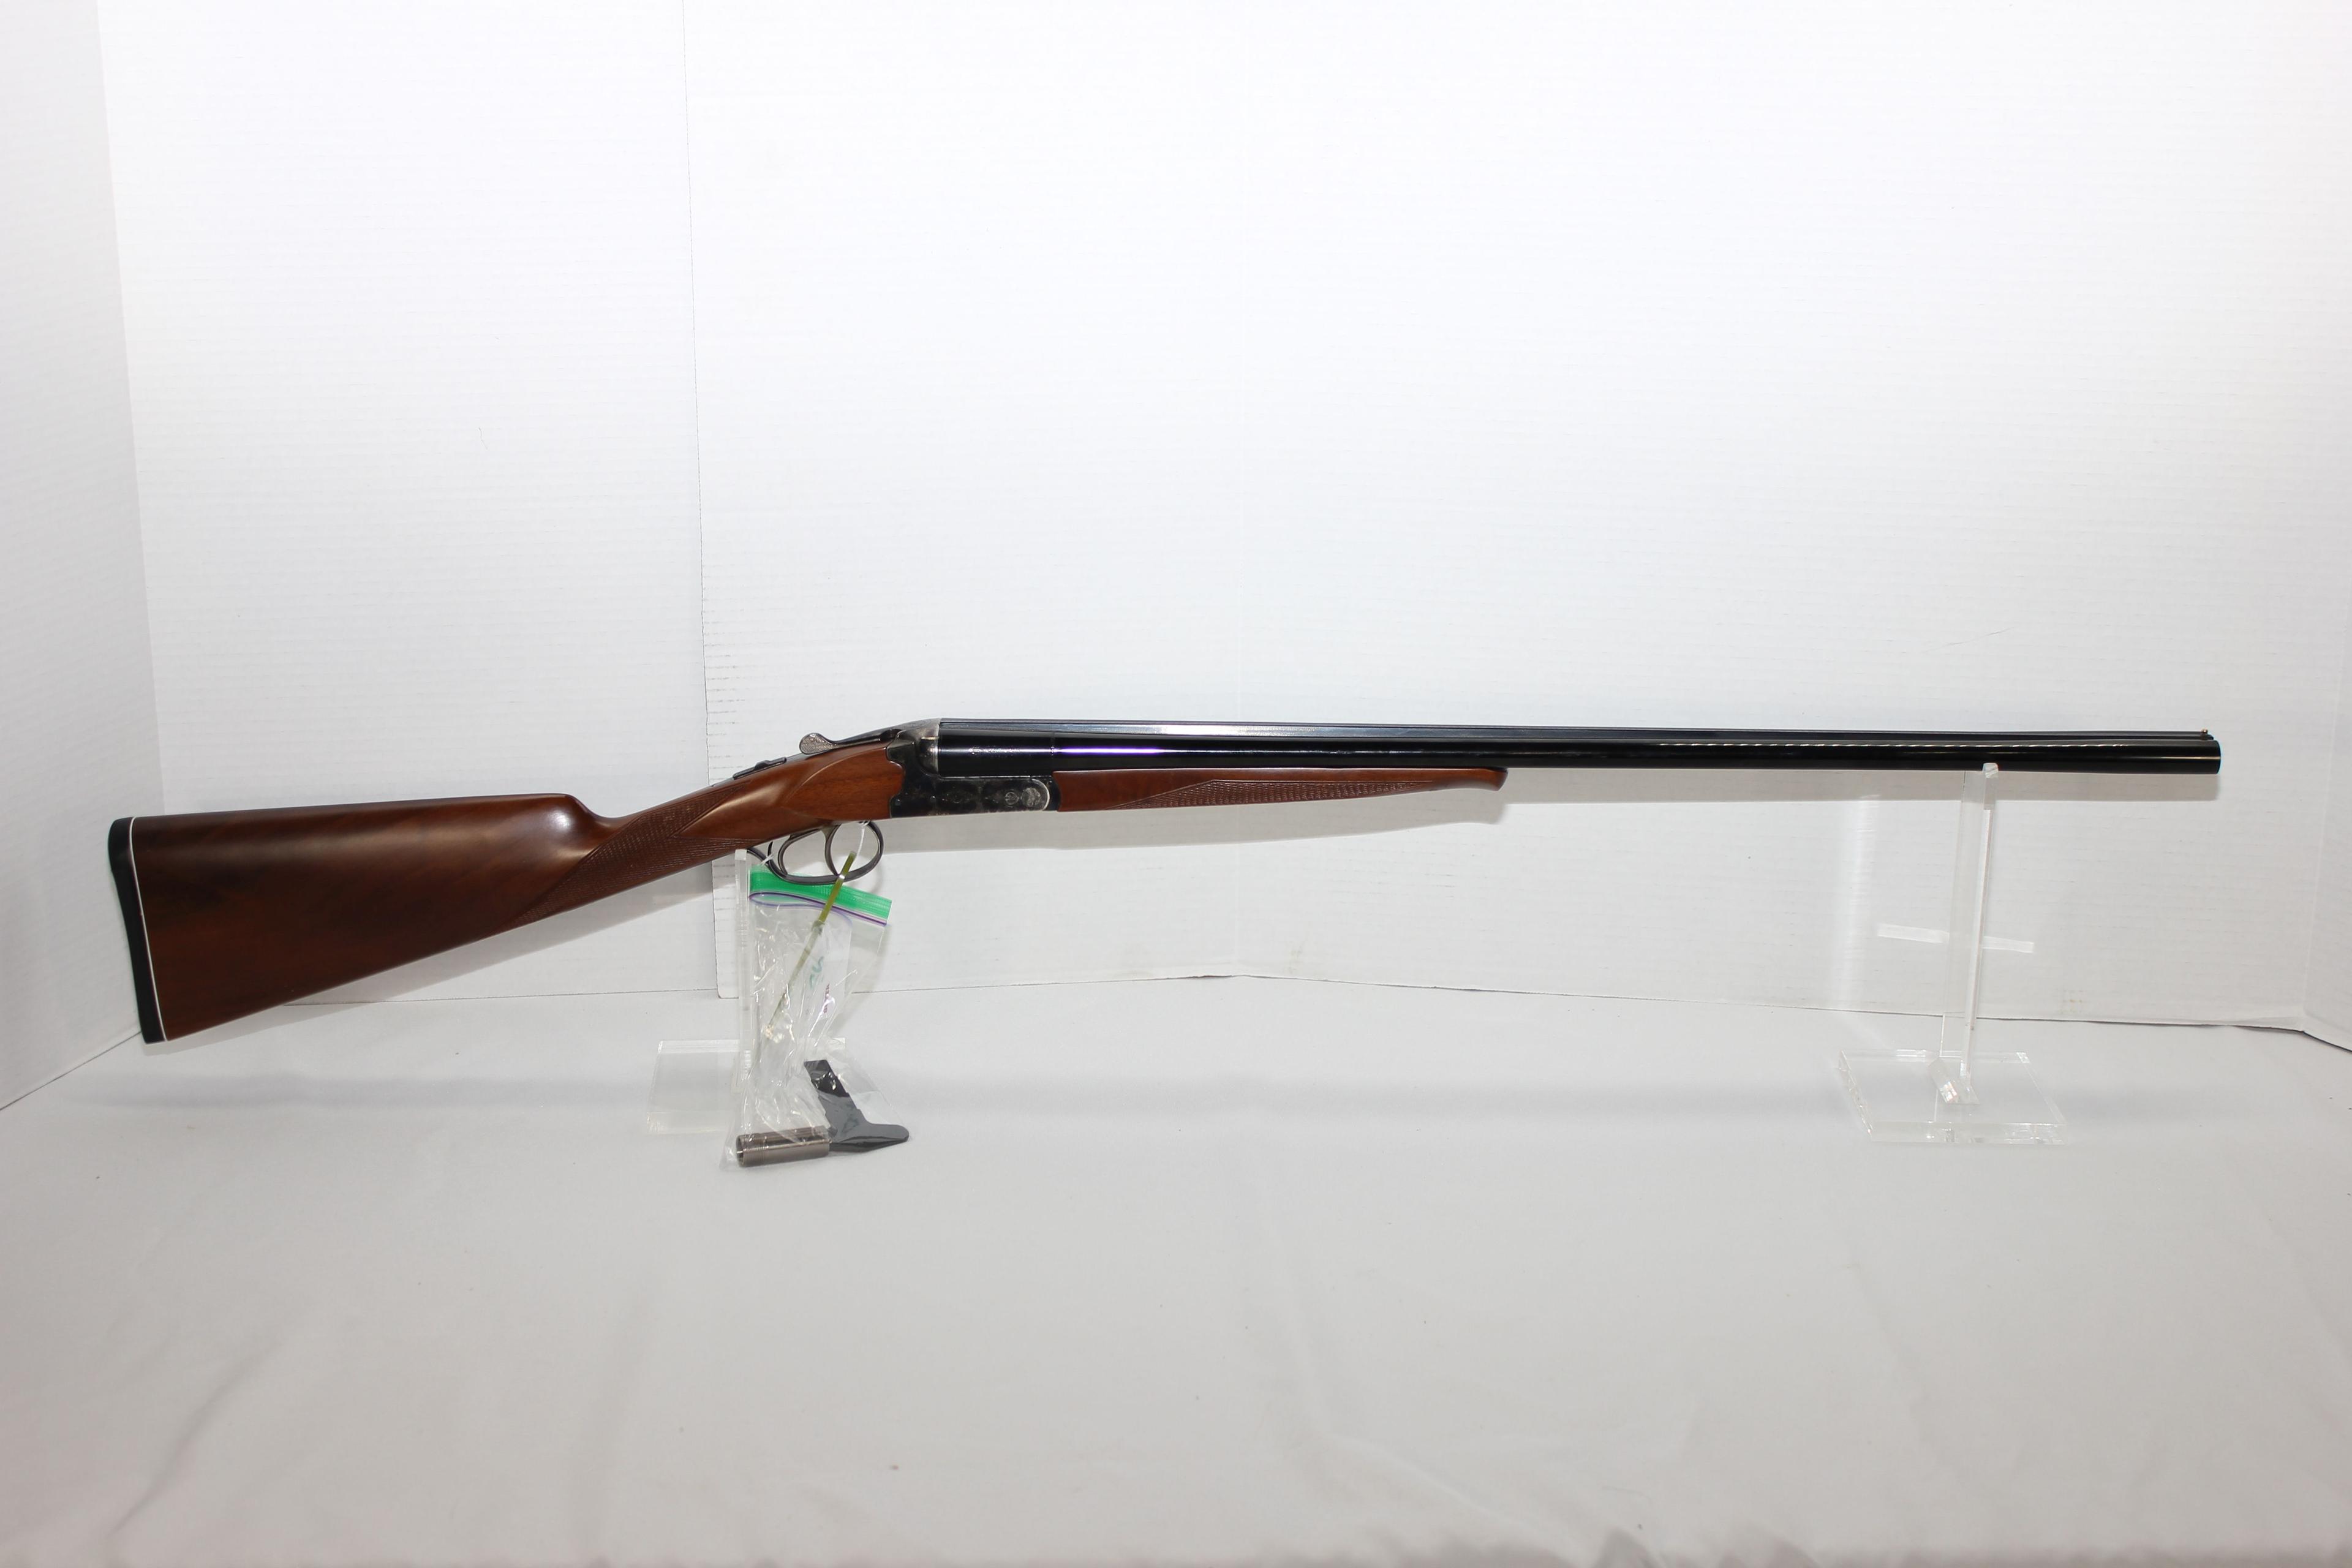 CZ Bobwhite Model 28 Ga. 2-3/4" Cham. Side-By-Side Double BBL Shotgun w/26"BBL, Double Triggers, Scr